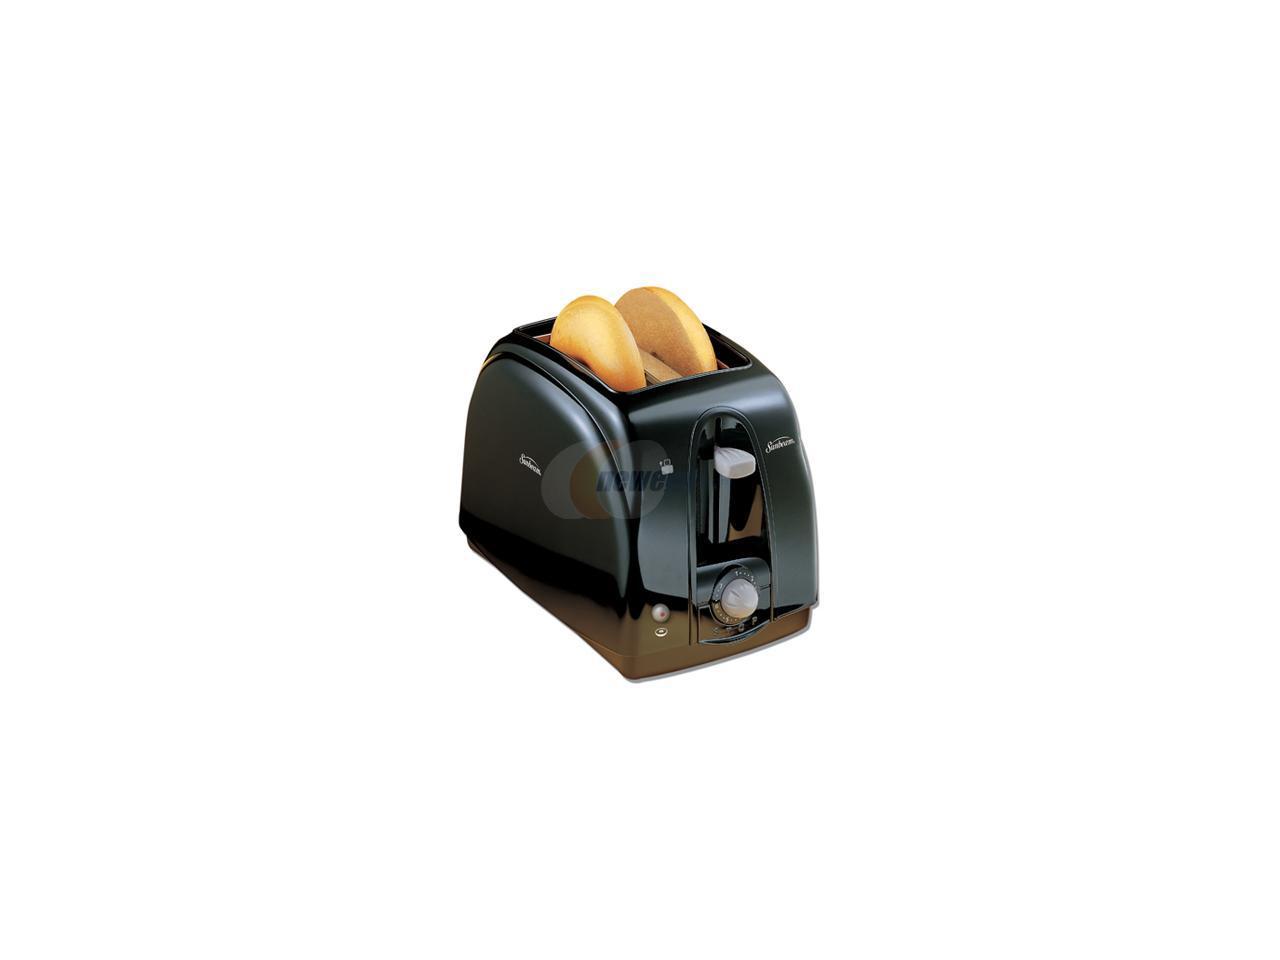 003910-100-000 Bagel Sunbeam 3910-100 Two Slice Toaster Toast Black 